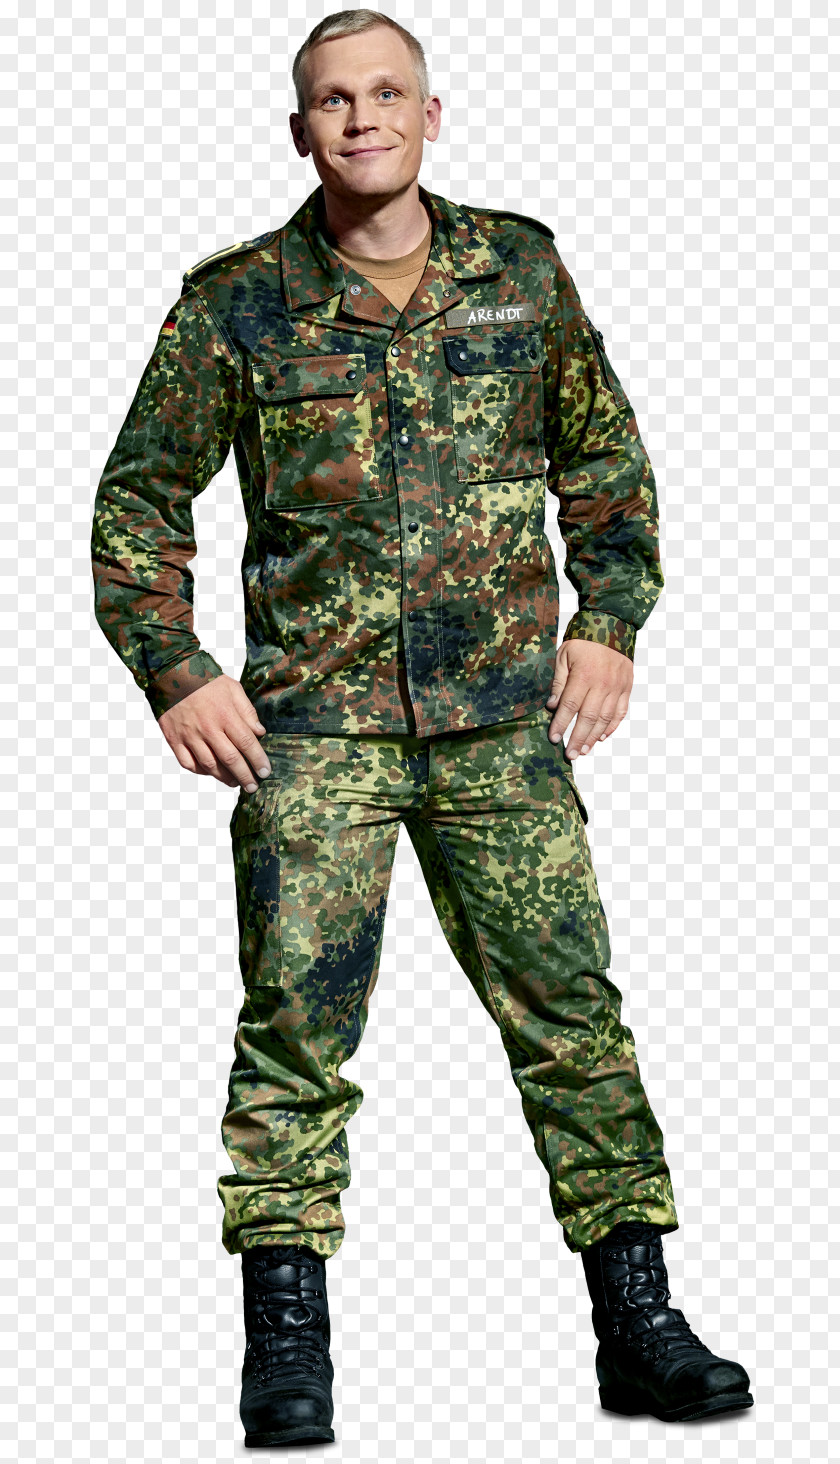 Anna Die Rekruten Military Camouflage Soldier Uniform PNG